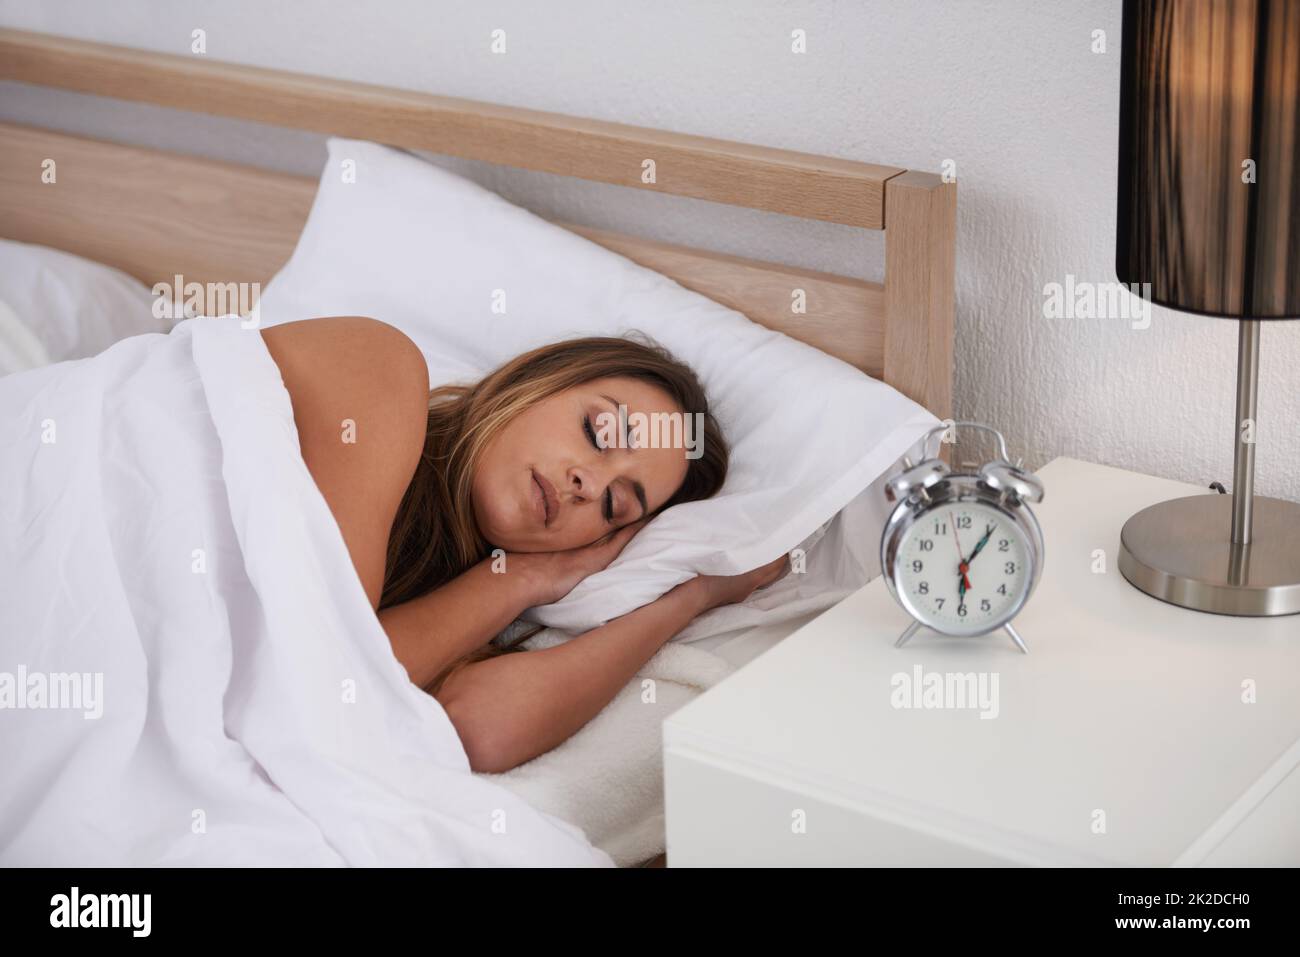 L'alarme se déclenchera bientôt Photo d'une belle jeune femme dormant dans son lit. Banque D'Images